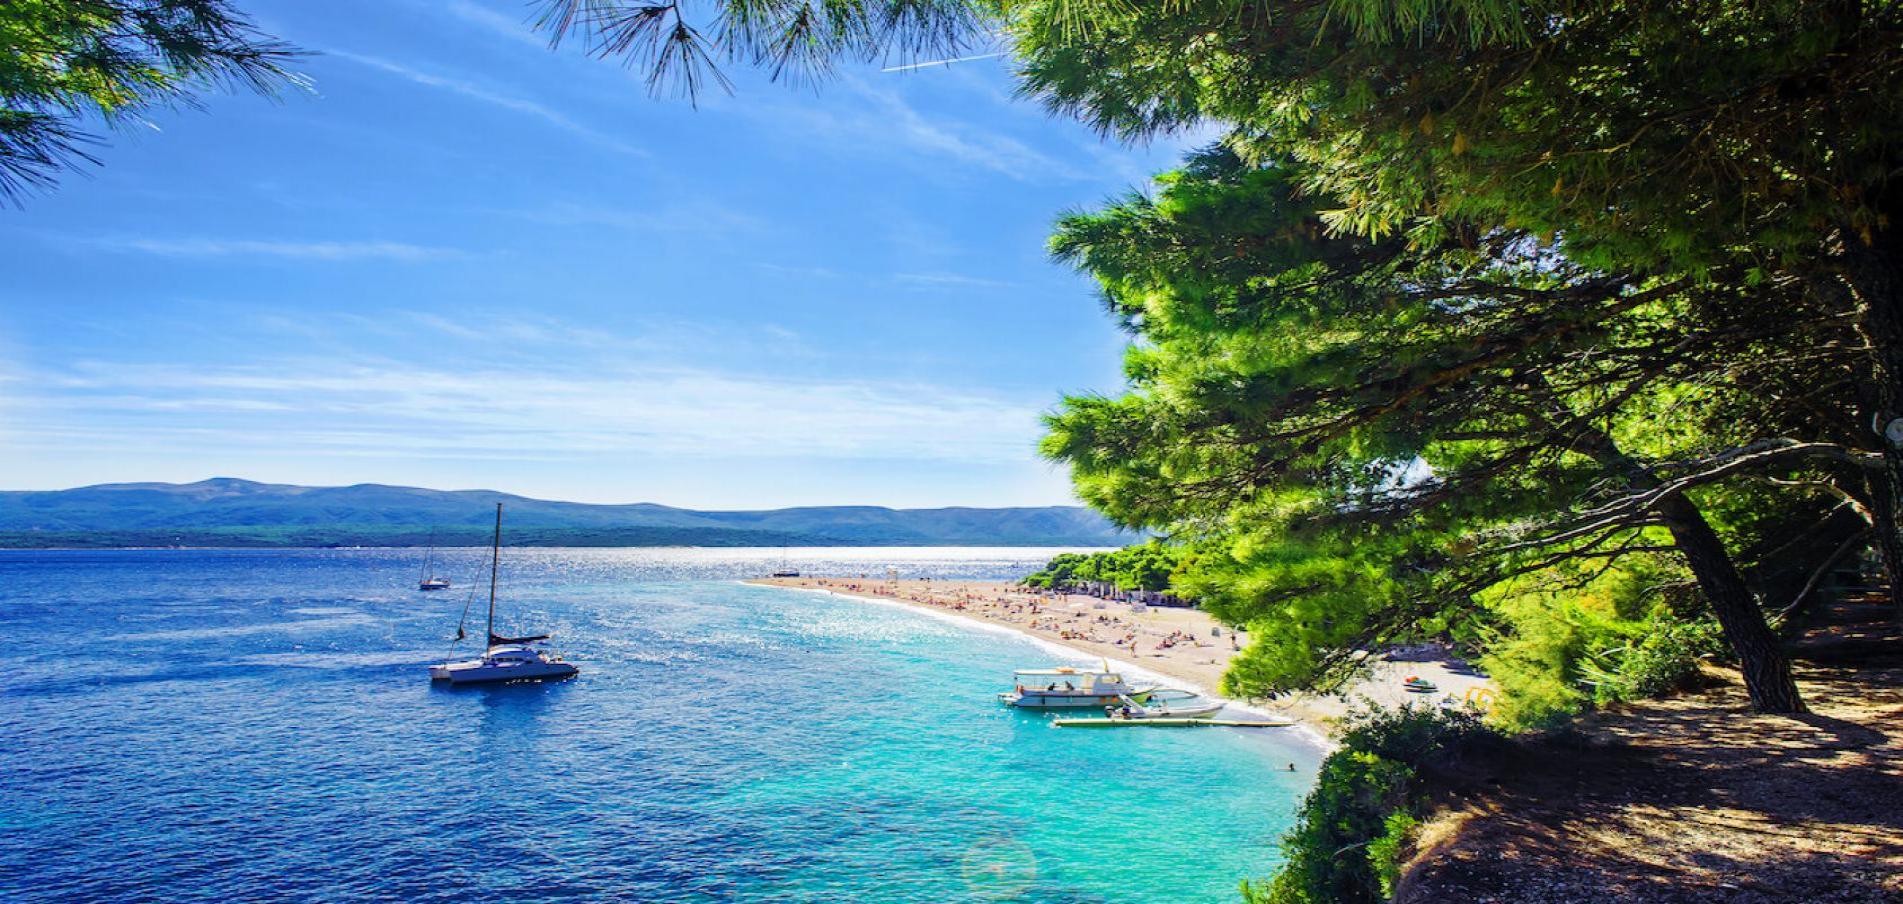 Location de yacht de luxe Croatie